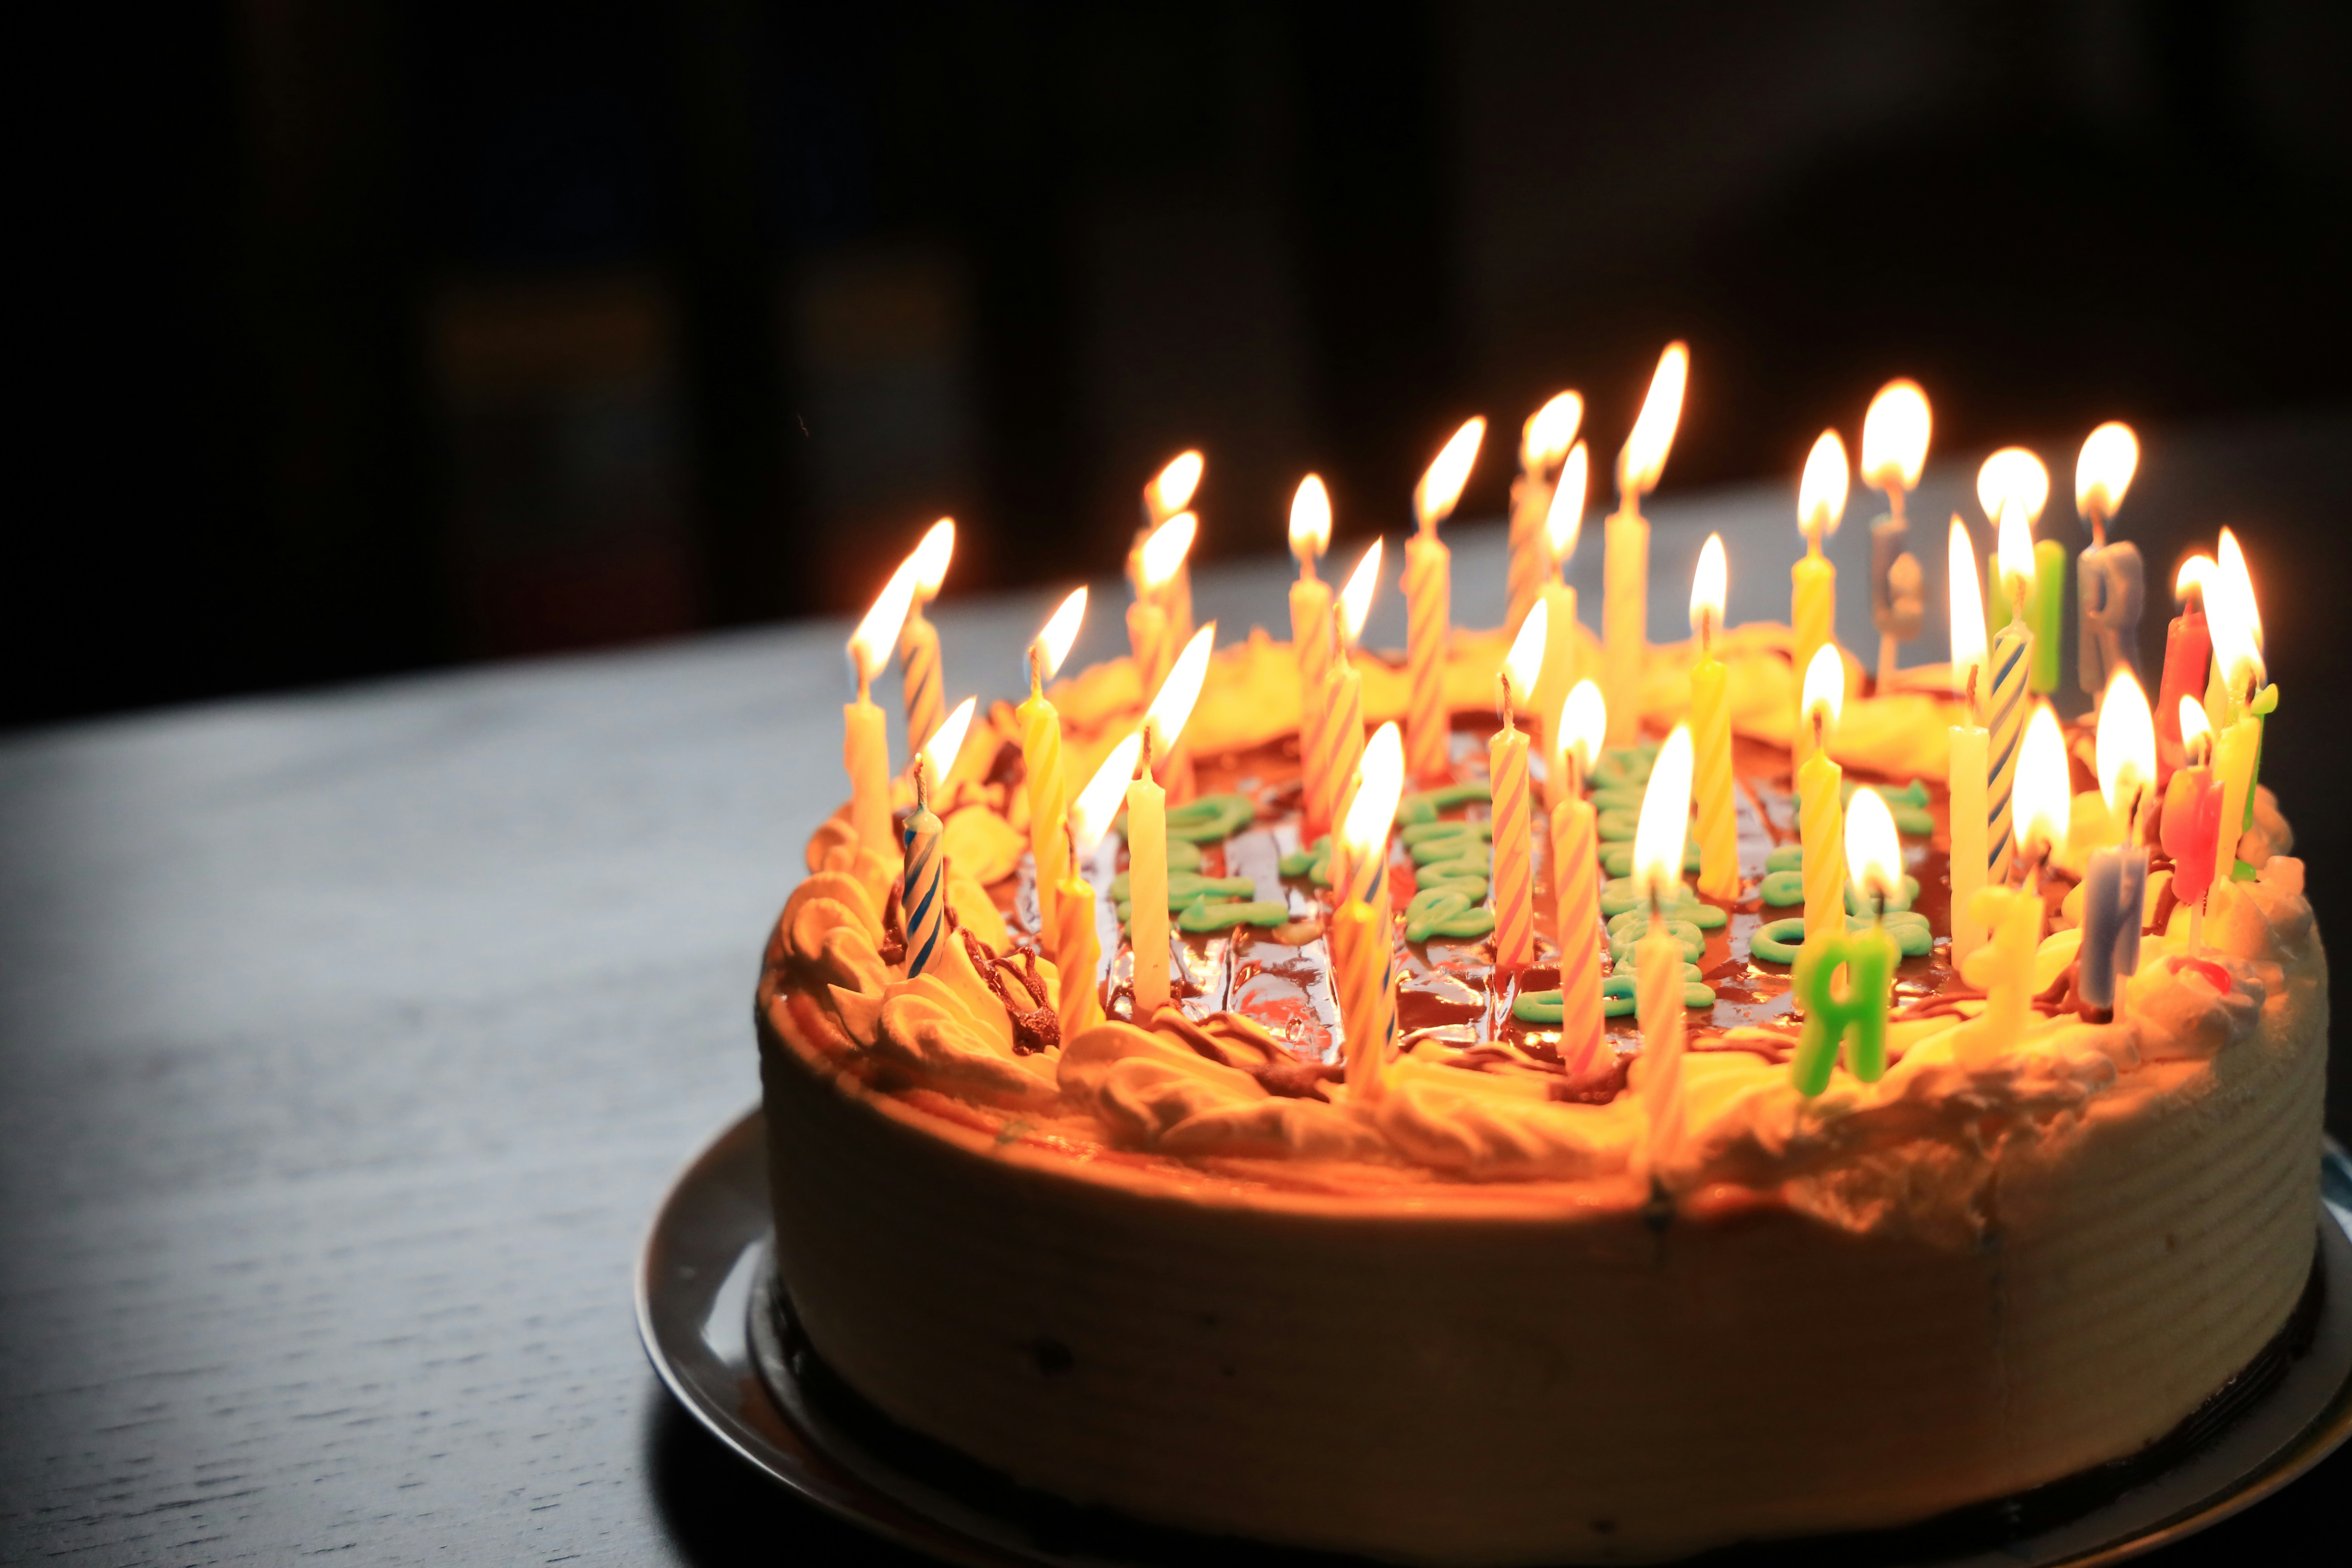 Gâteau D'anniversaire De 3 Ans Avec Bougies Allumées Et Bannière D' anniversaire De Confettis